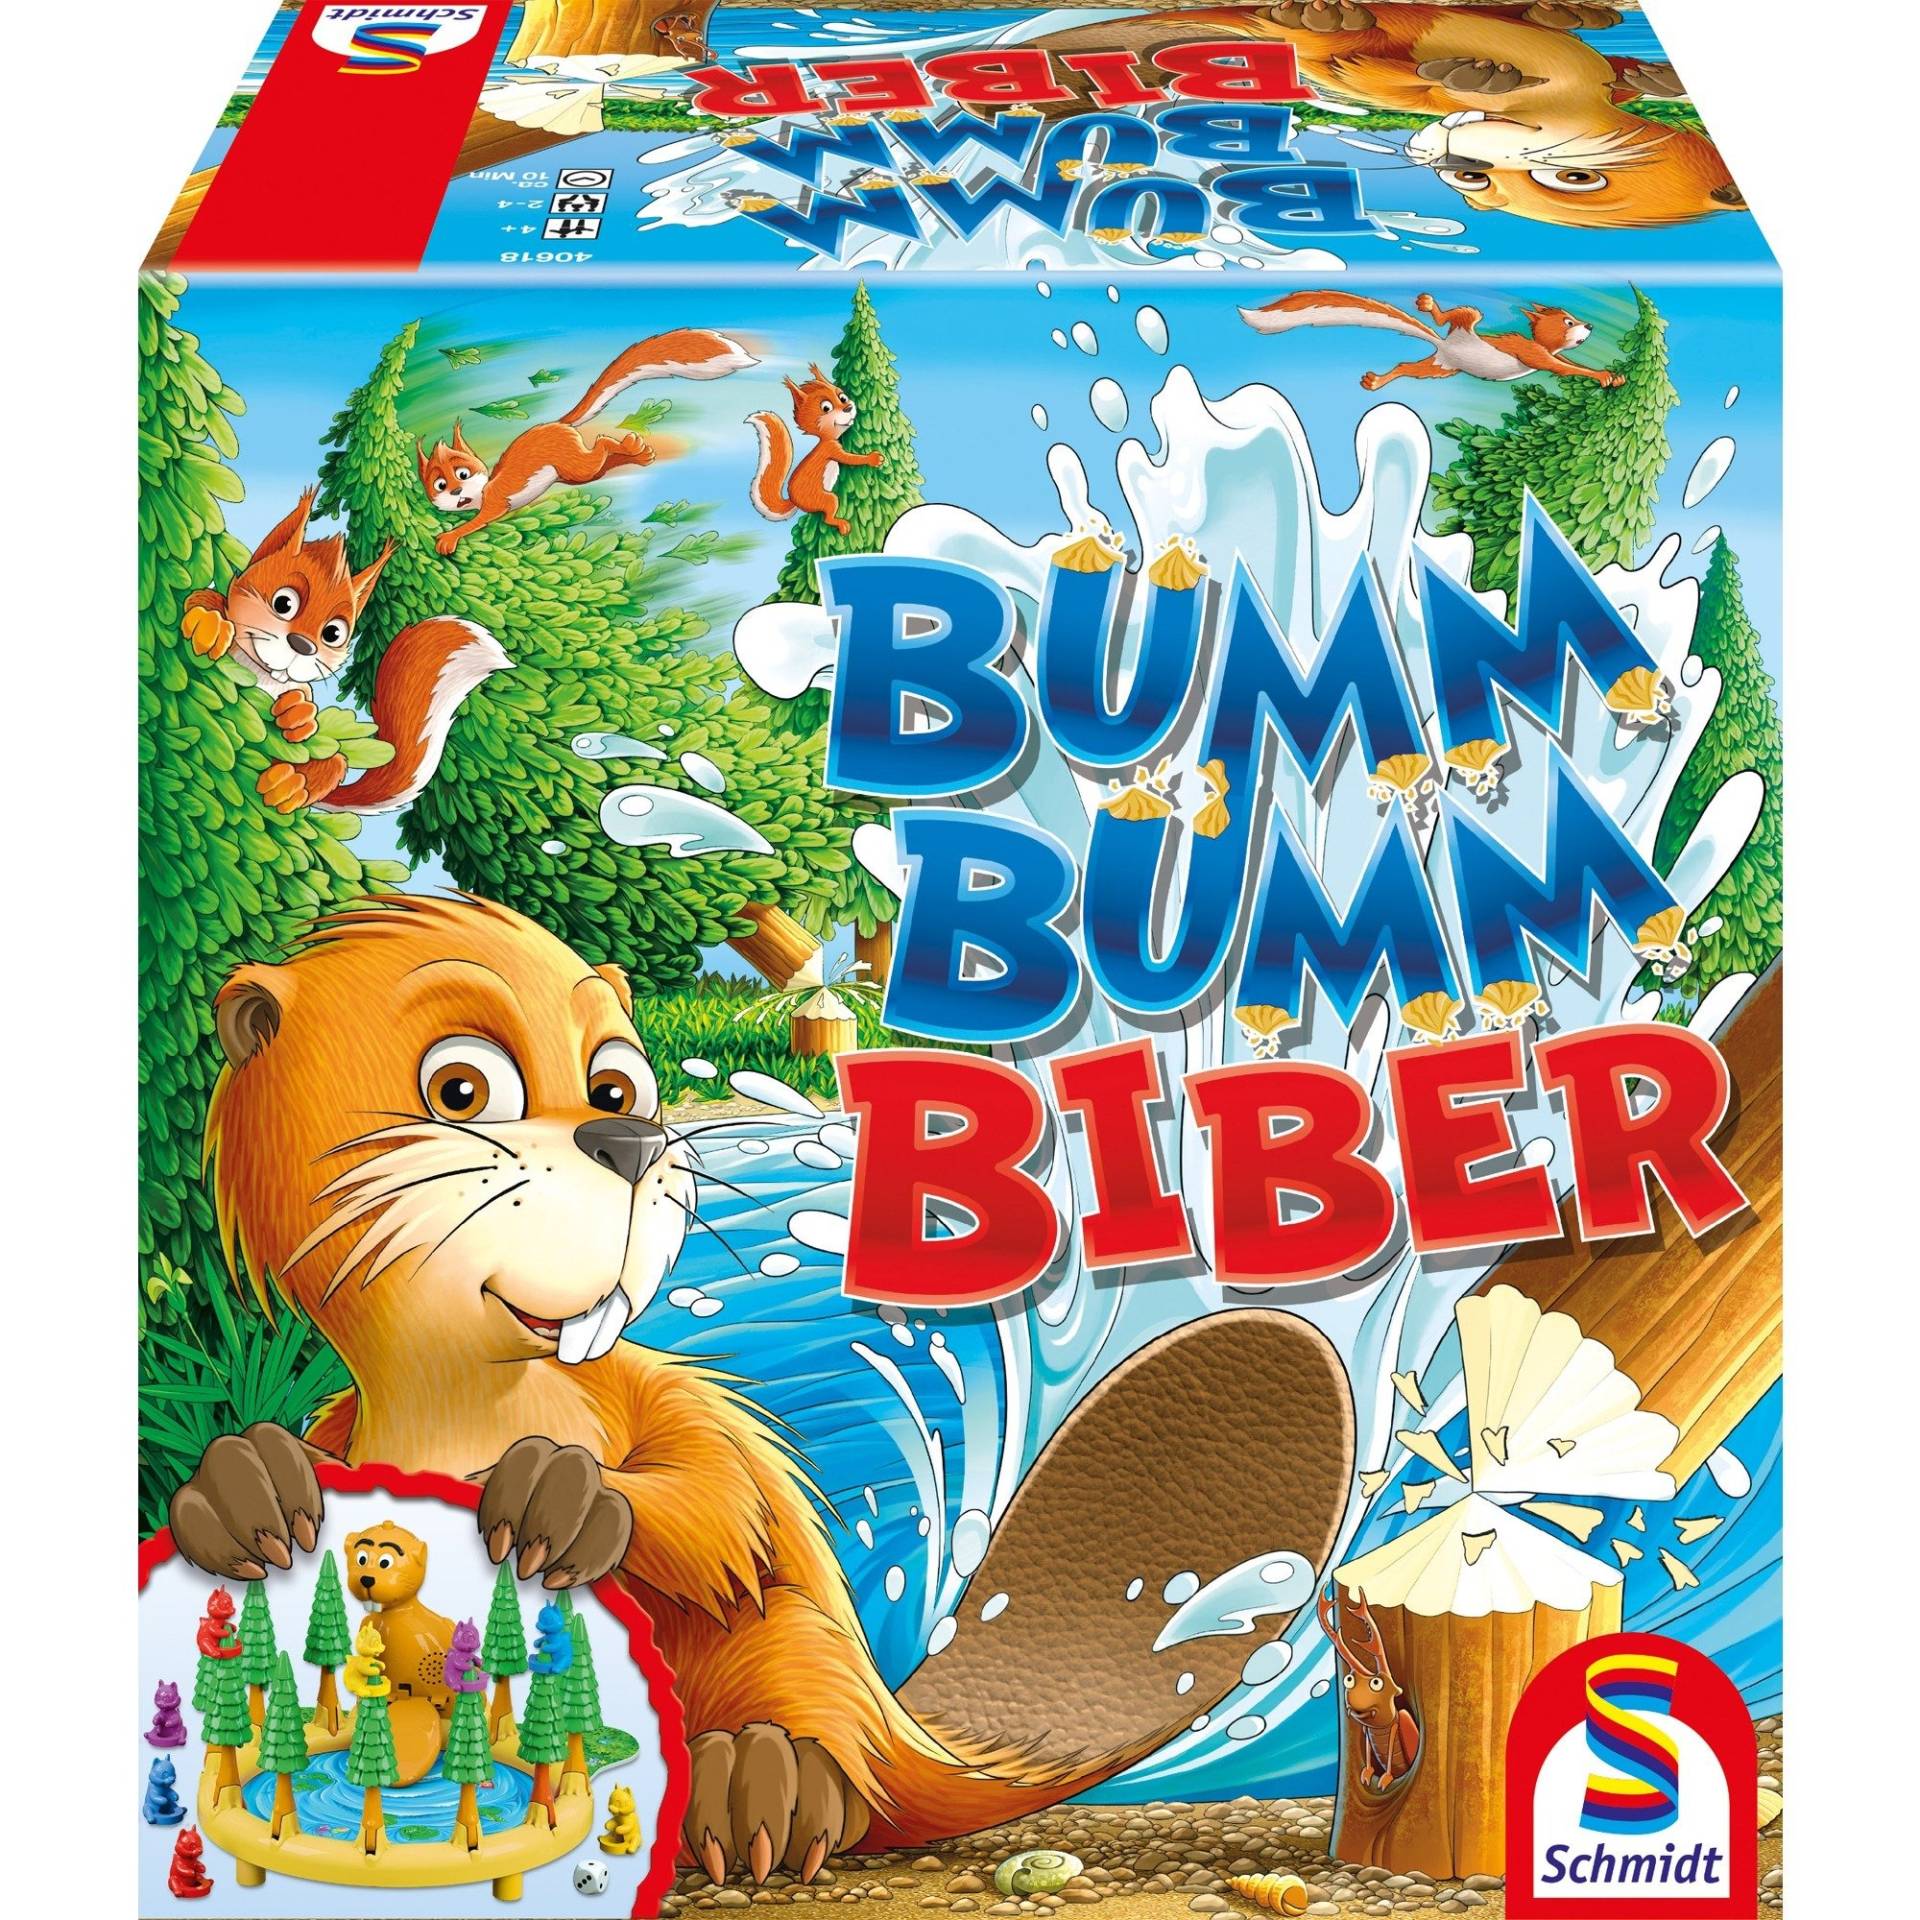 Bumm Bumm Biber, Brettspiel von Schmidt Spiele